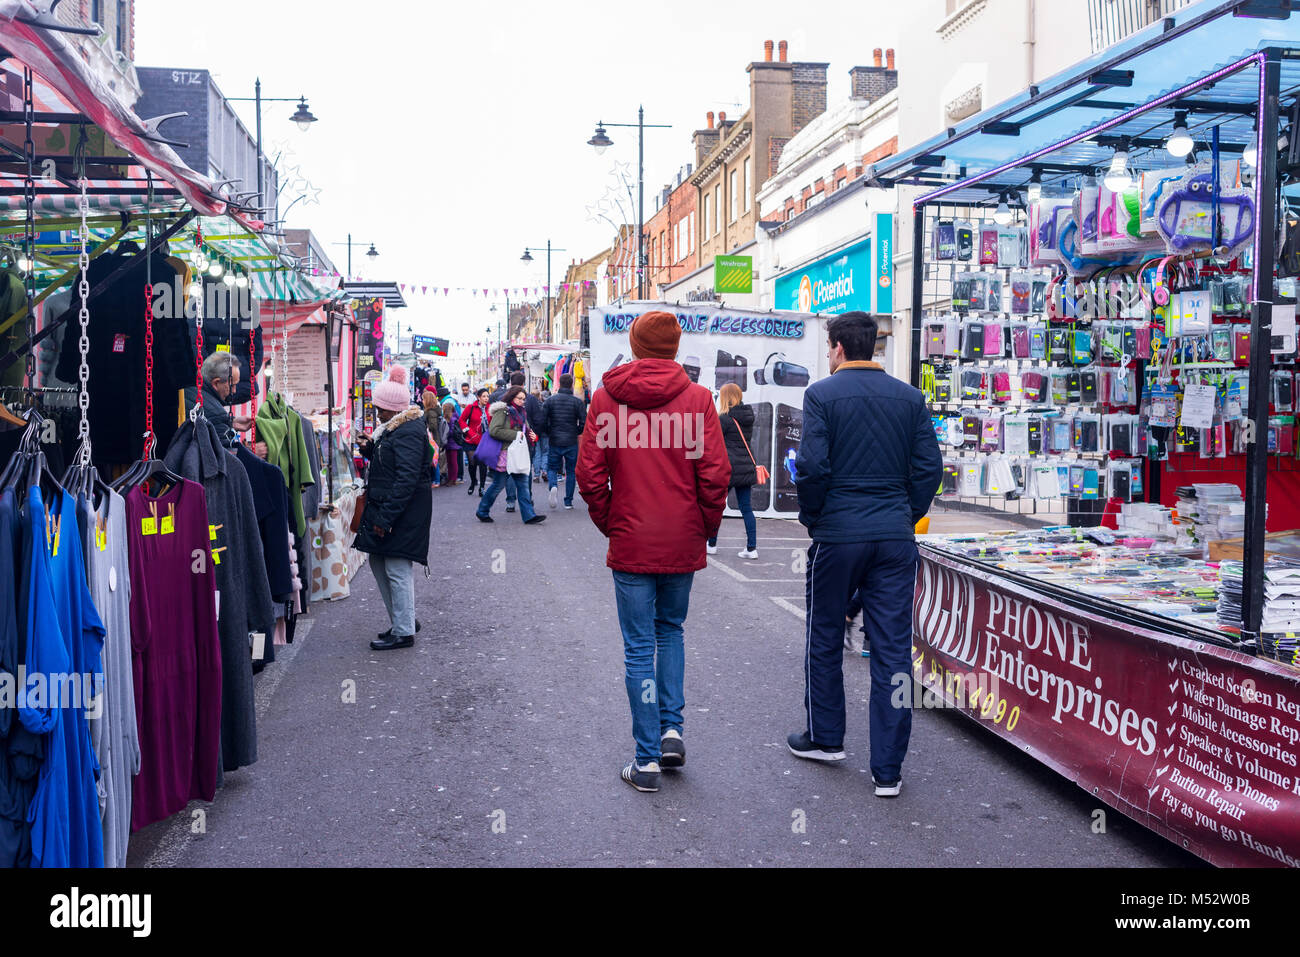 Personnes à pied et shopping autour de plusieurs échoppes à la chapelle, une rue du Marché quotidien du marché dans Angel, Islington, Londres, Royaume-Uni. Banque D'Images